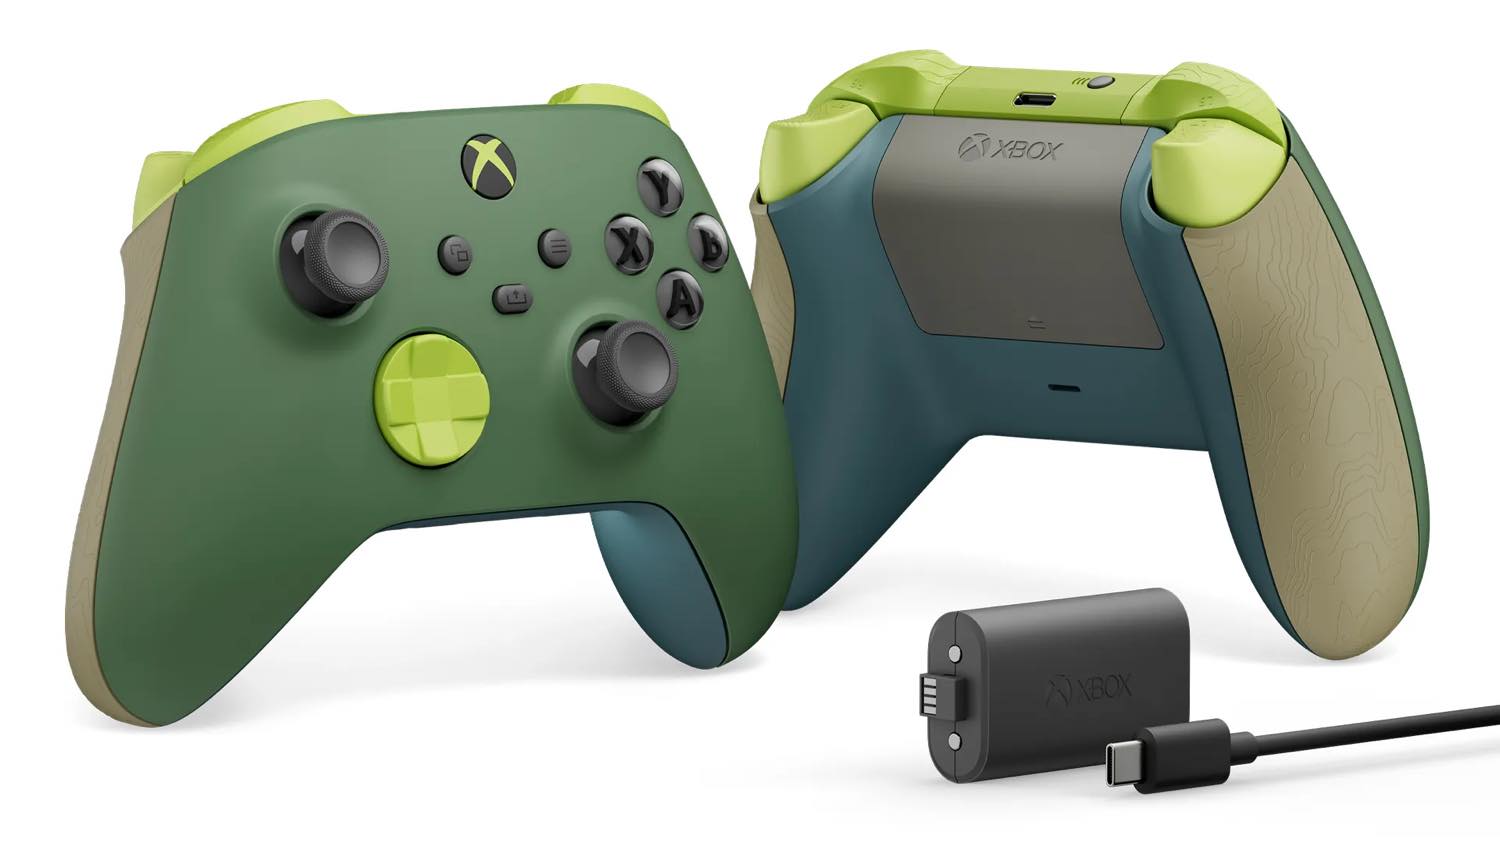 ｢Xbox ワイヤレスコントローラー｣に環境に配慮した新モデル｢リミックス特別エディション｣が登場 ｰ 4月18日に発売へ